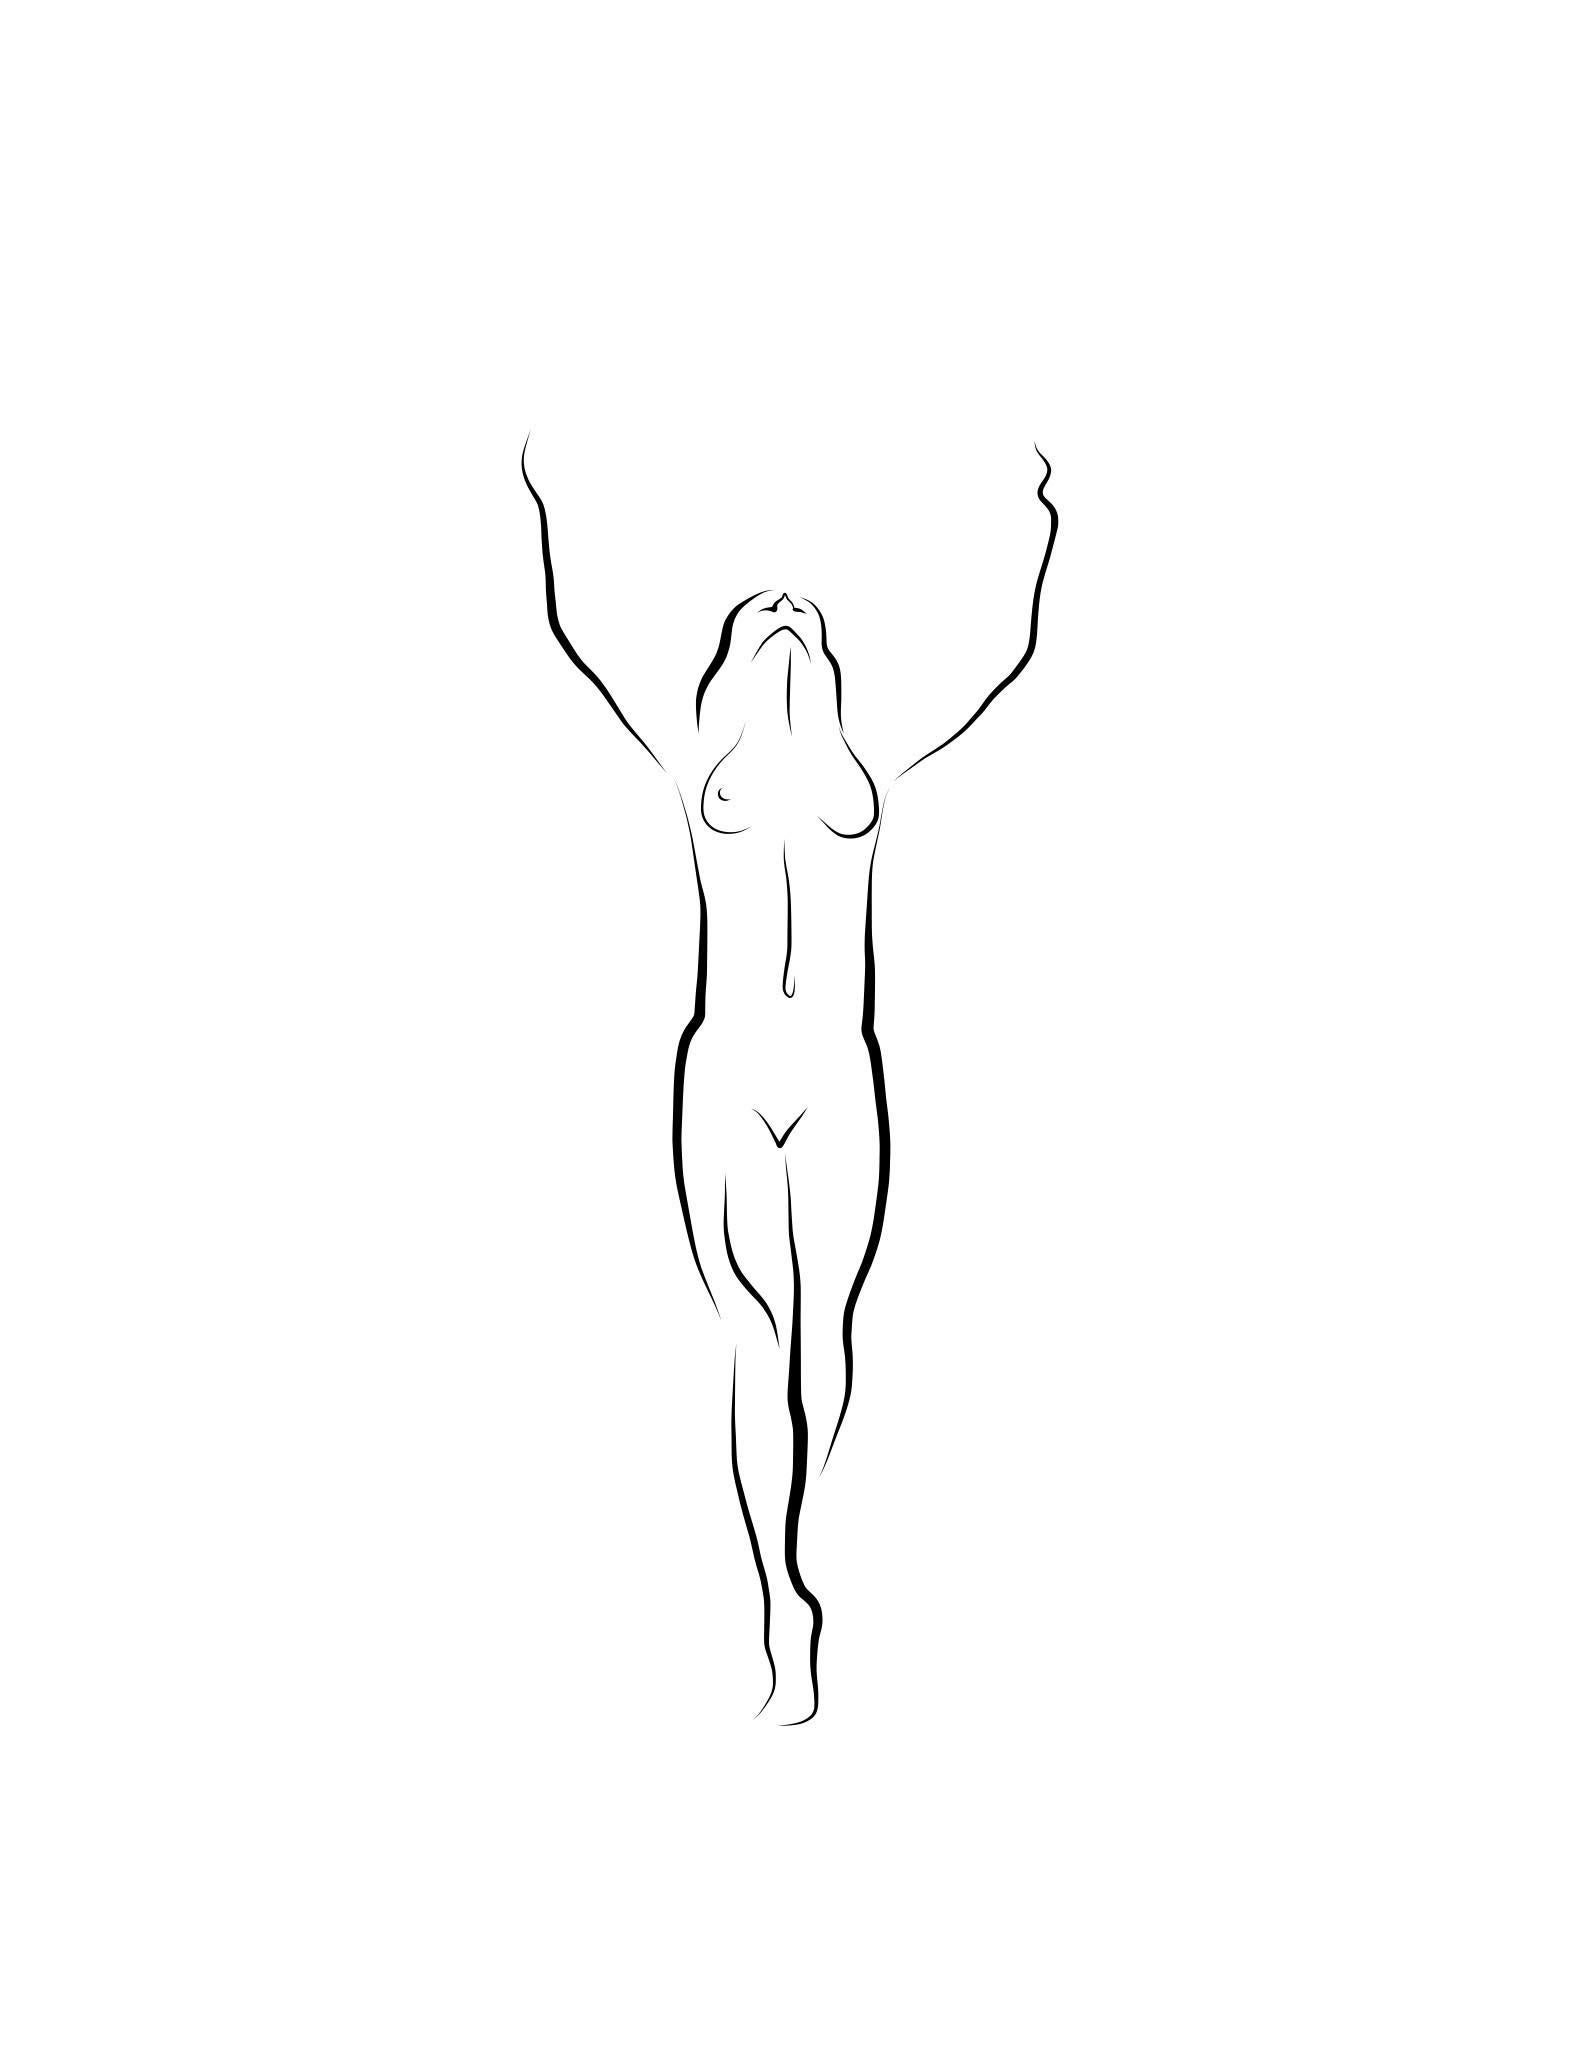 Michael Binkley Nude Print – Haiku #48, 1/ 50 - Digitale Vector-Zeichnung, stehende weibliche Aktfigur, weiblicher Akt, Figur